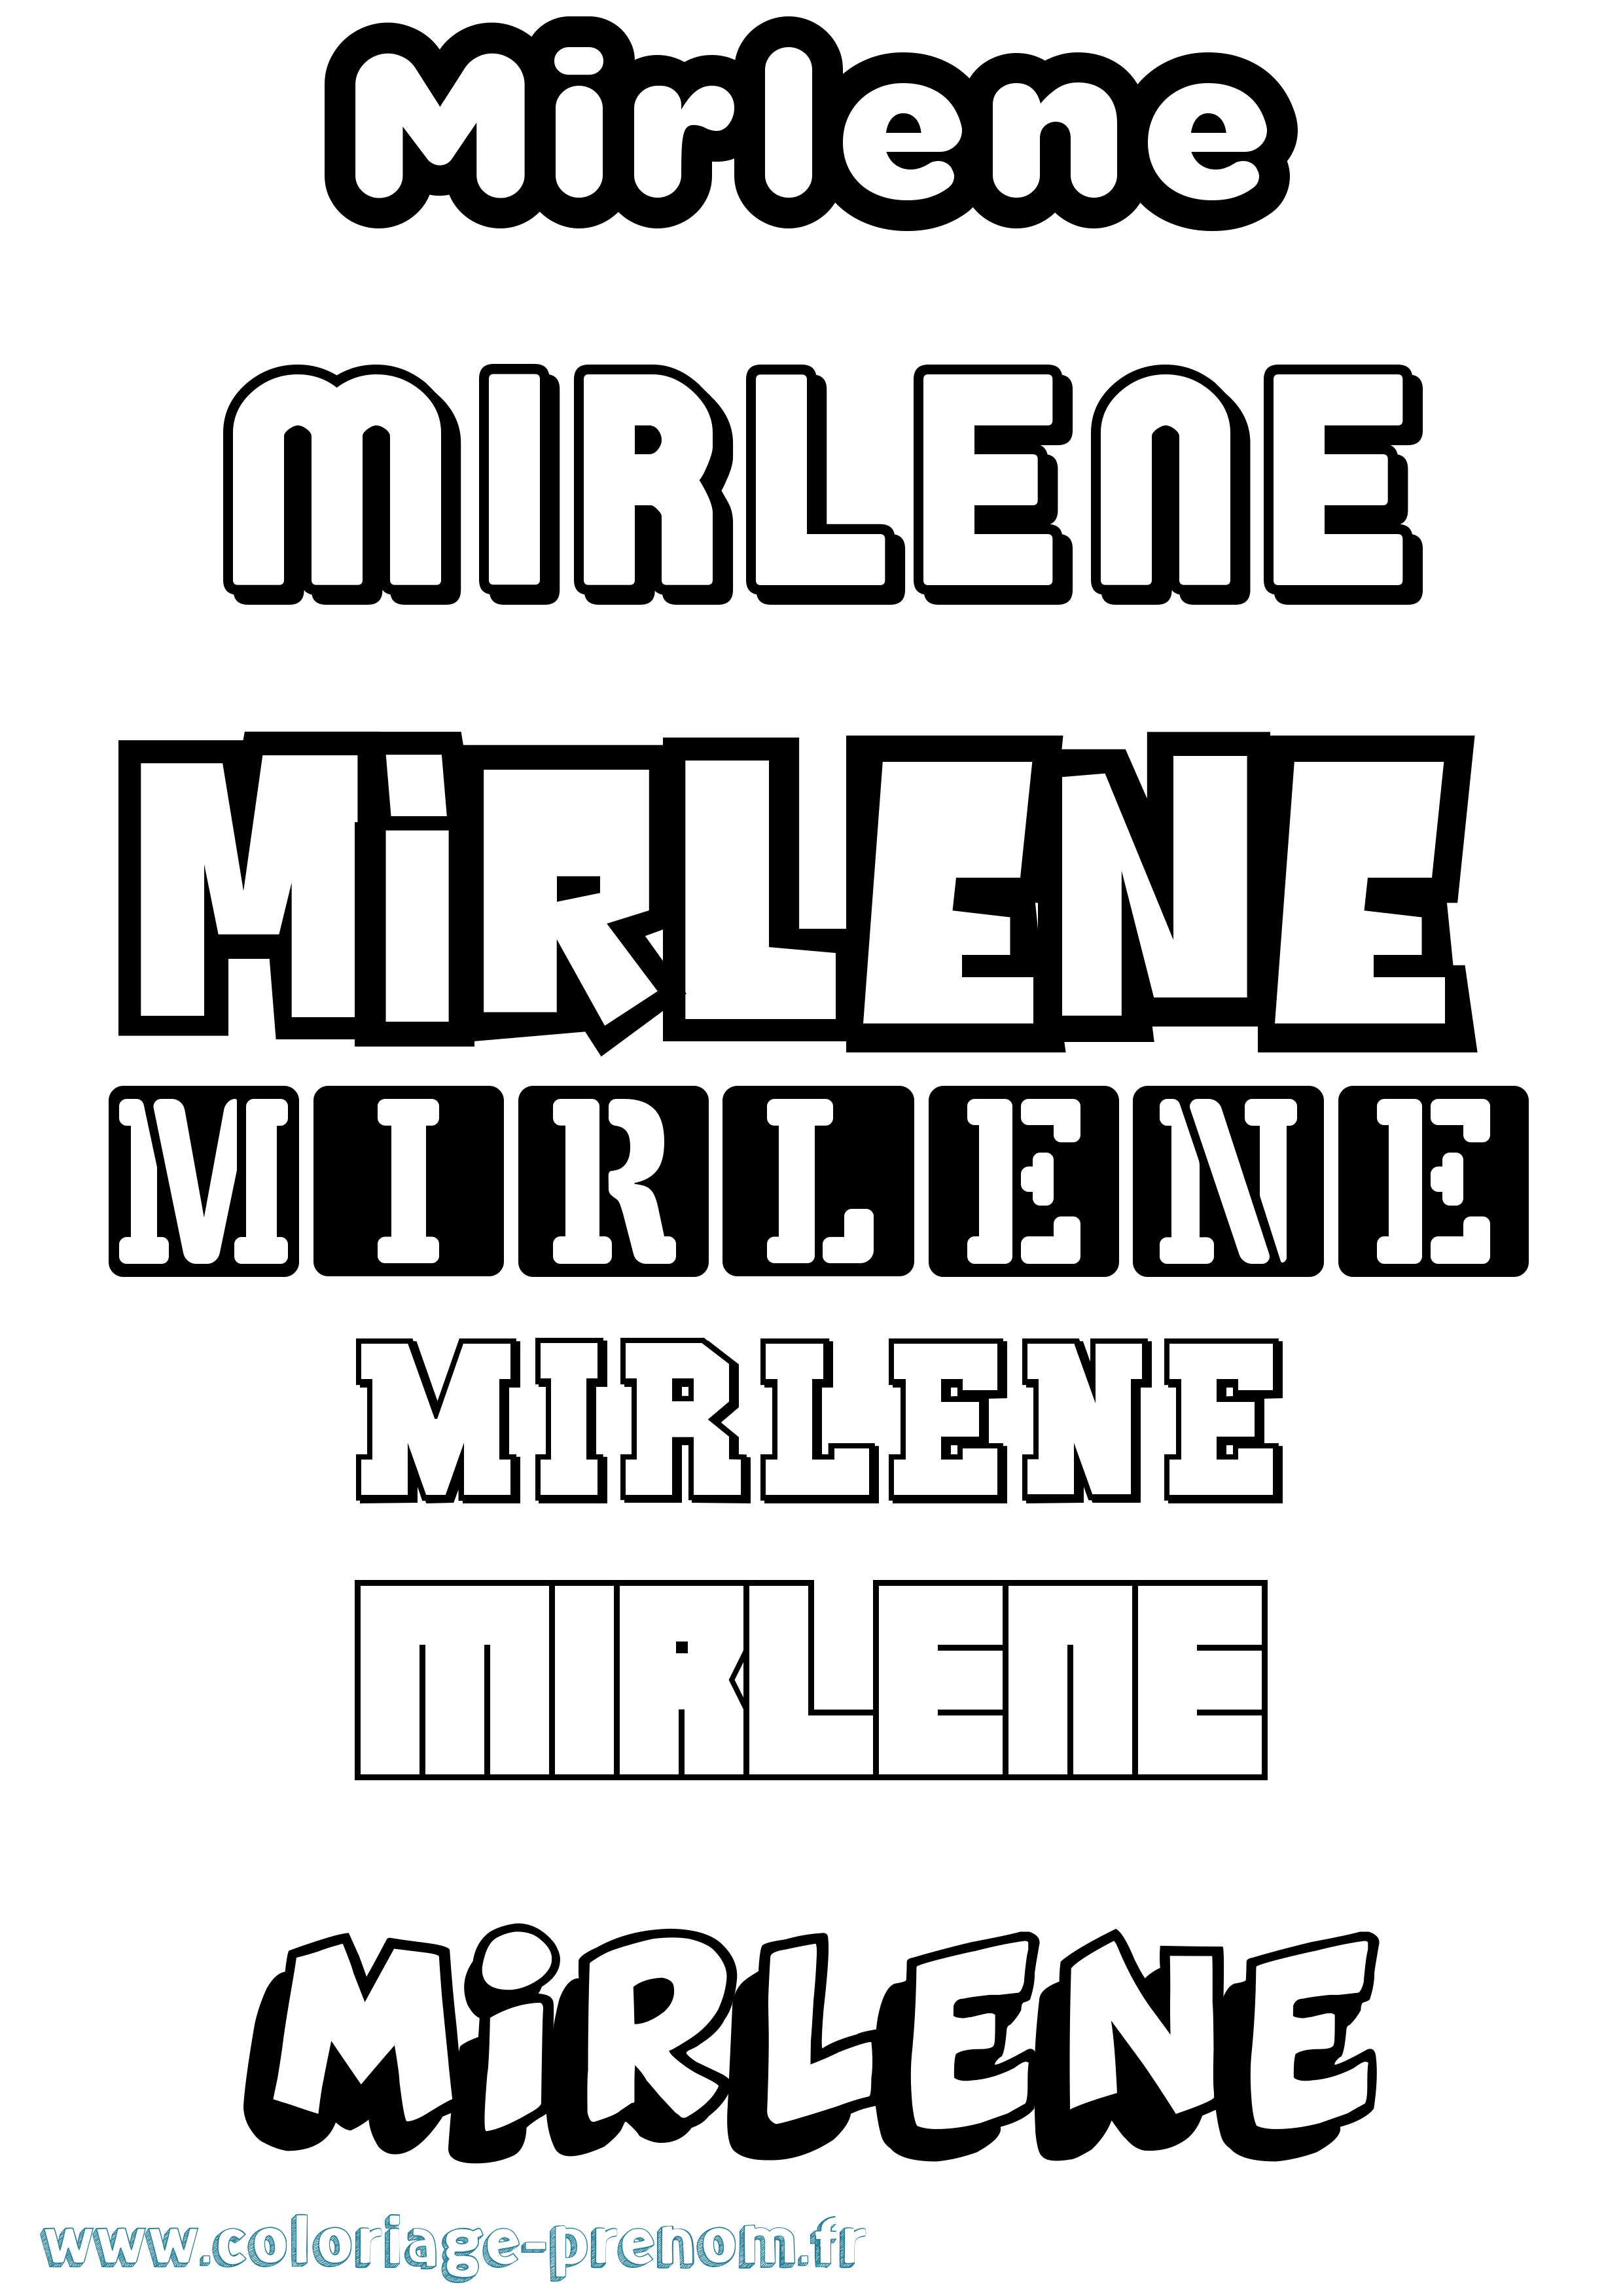 Coloriage prénom Mirlene Simple